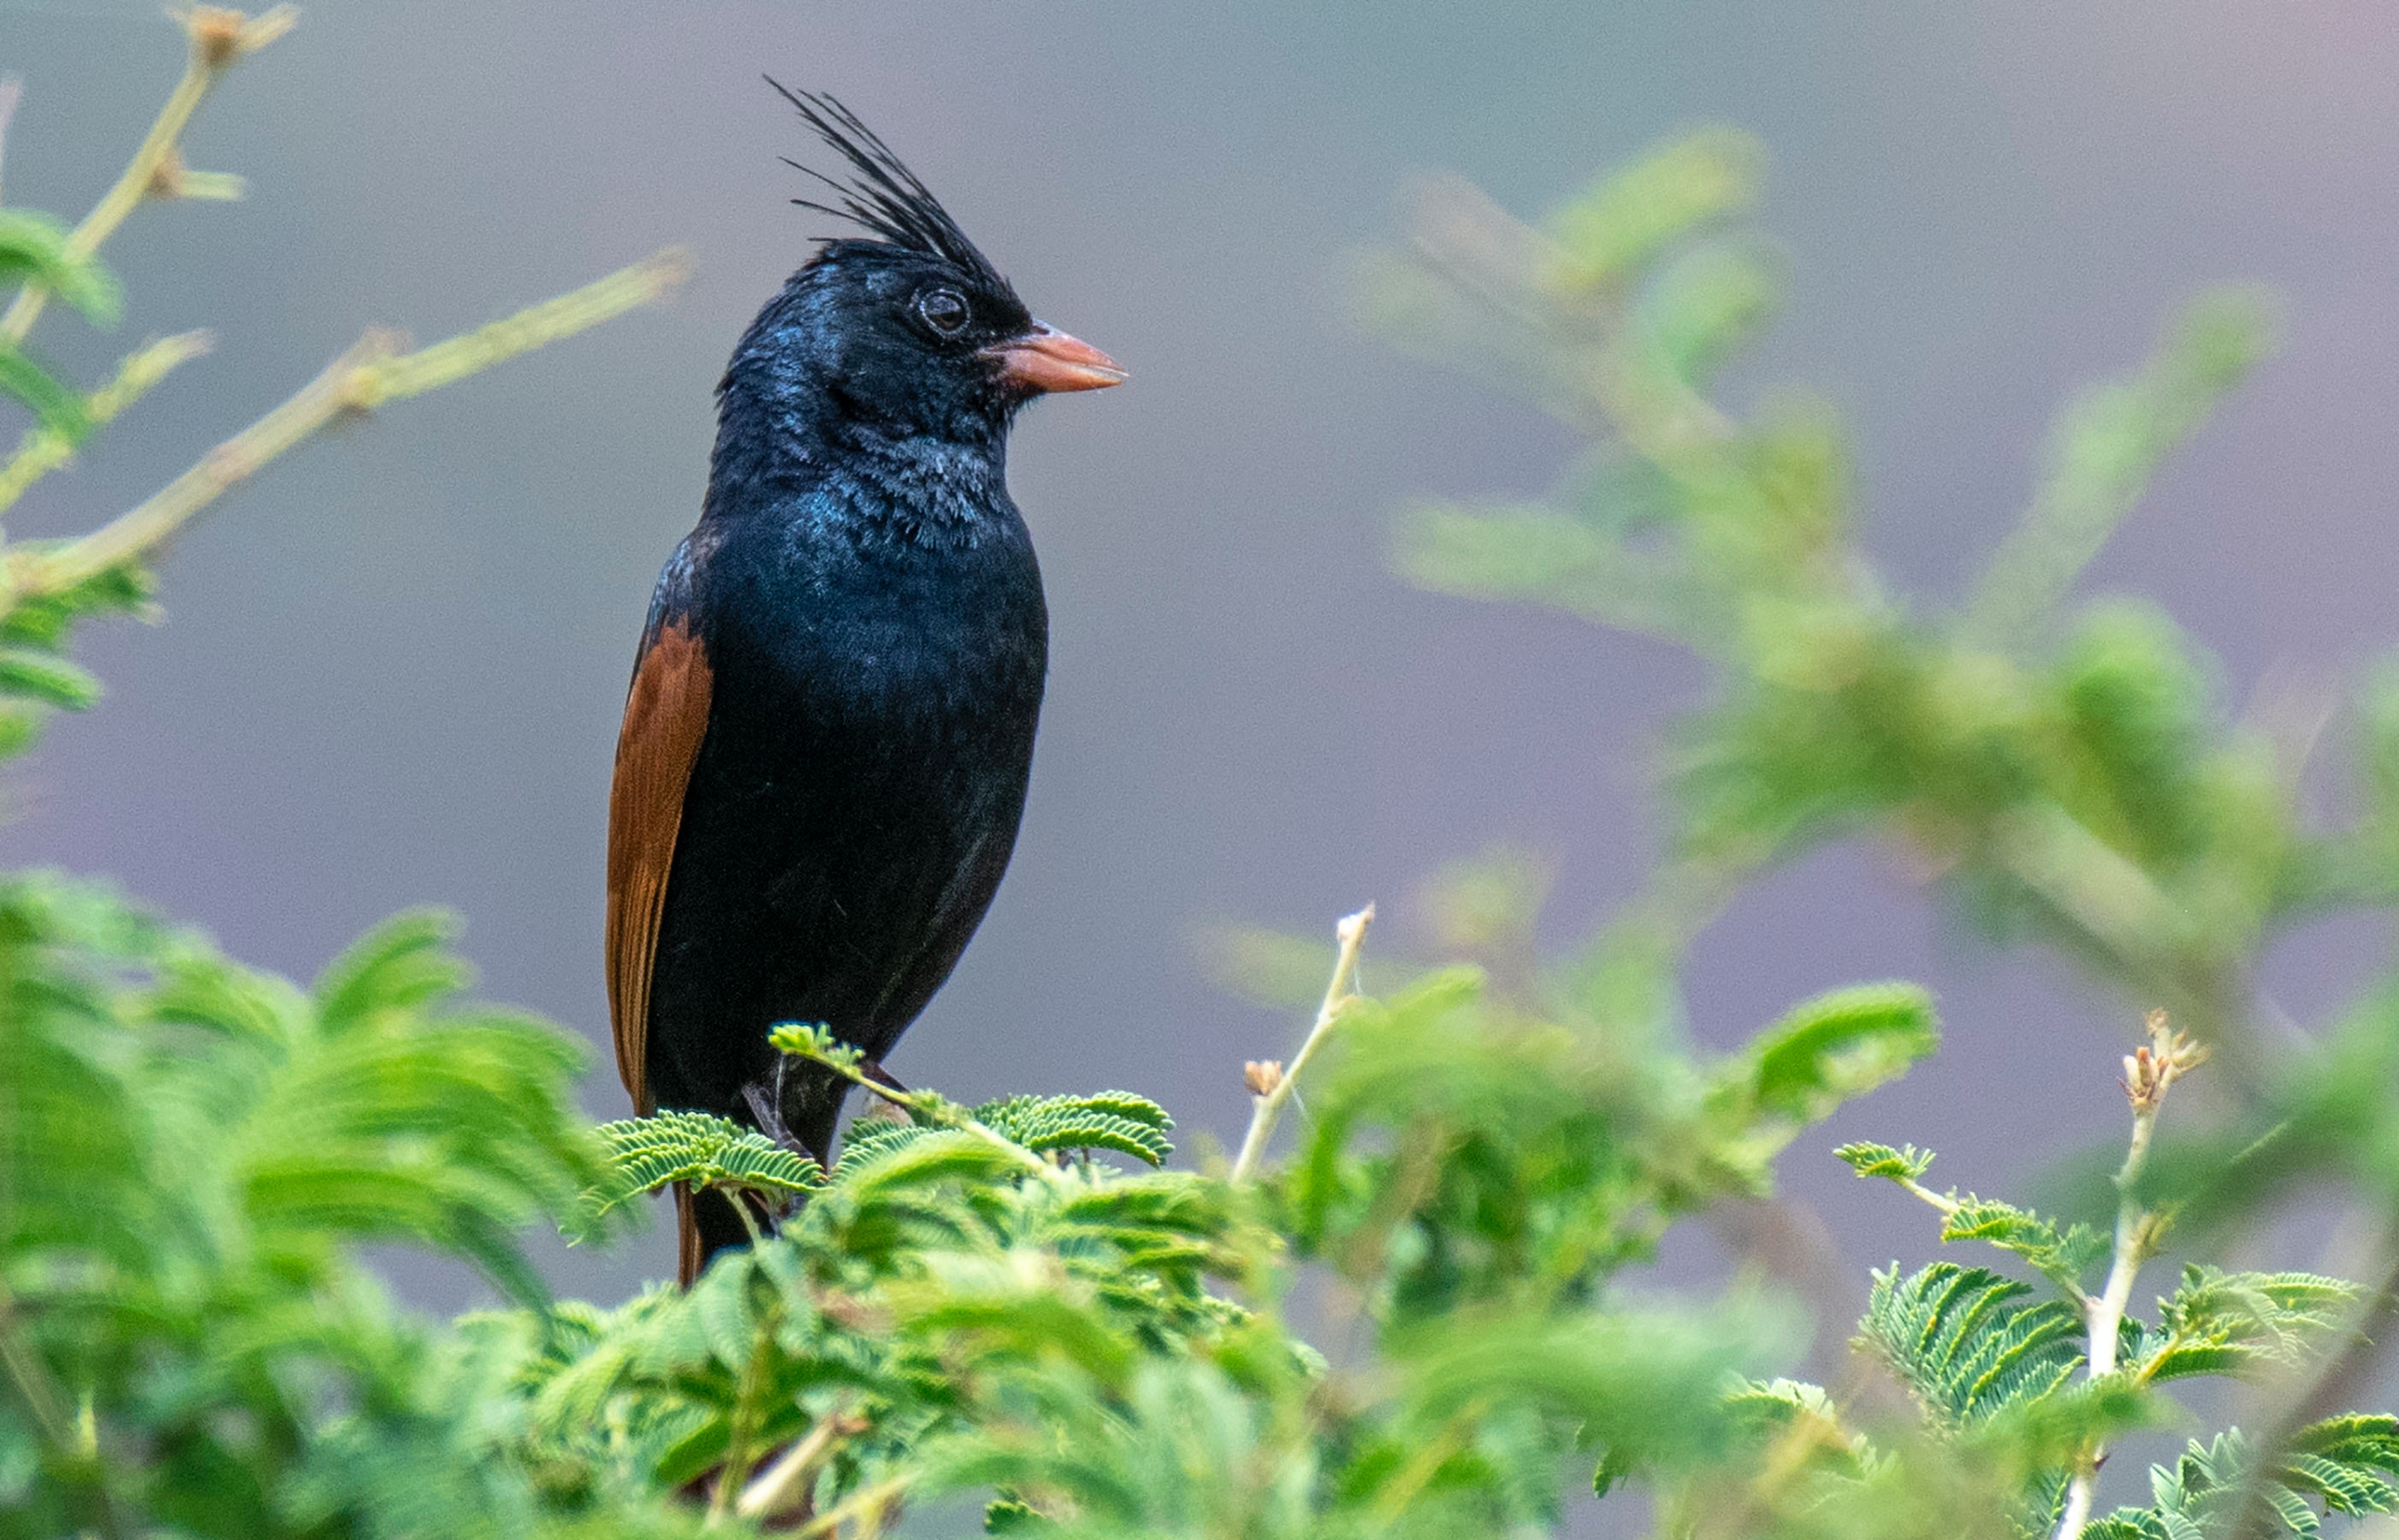  Cách sử dụng cám chim chất lượng để tăng hiệu quả cho chim tại Hà Nội